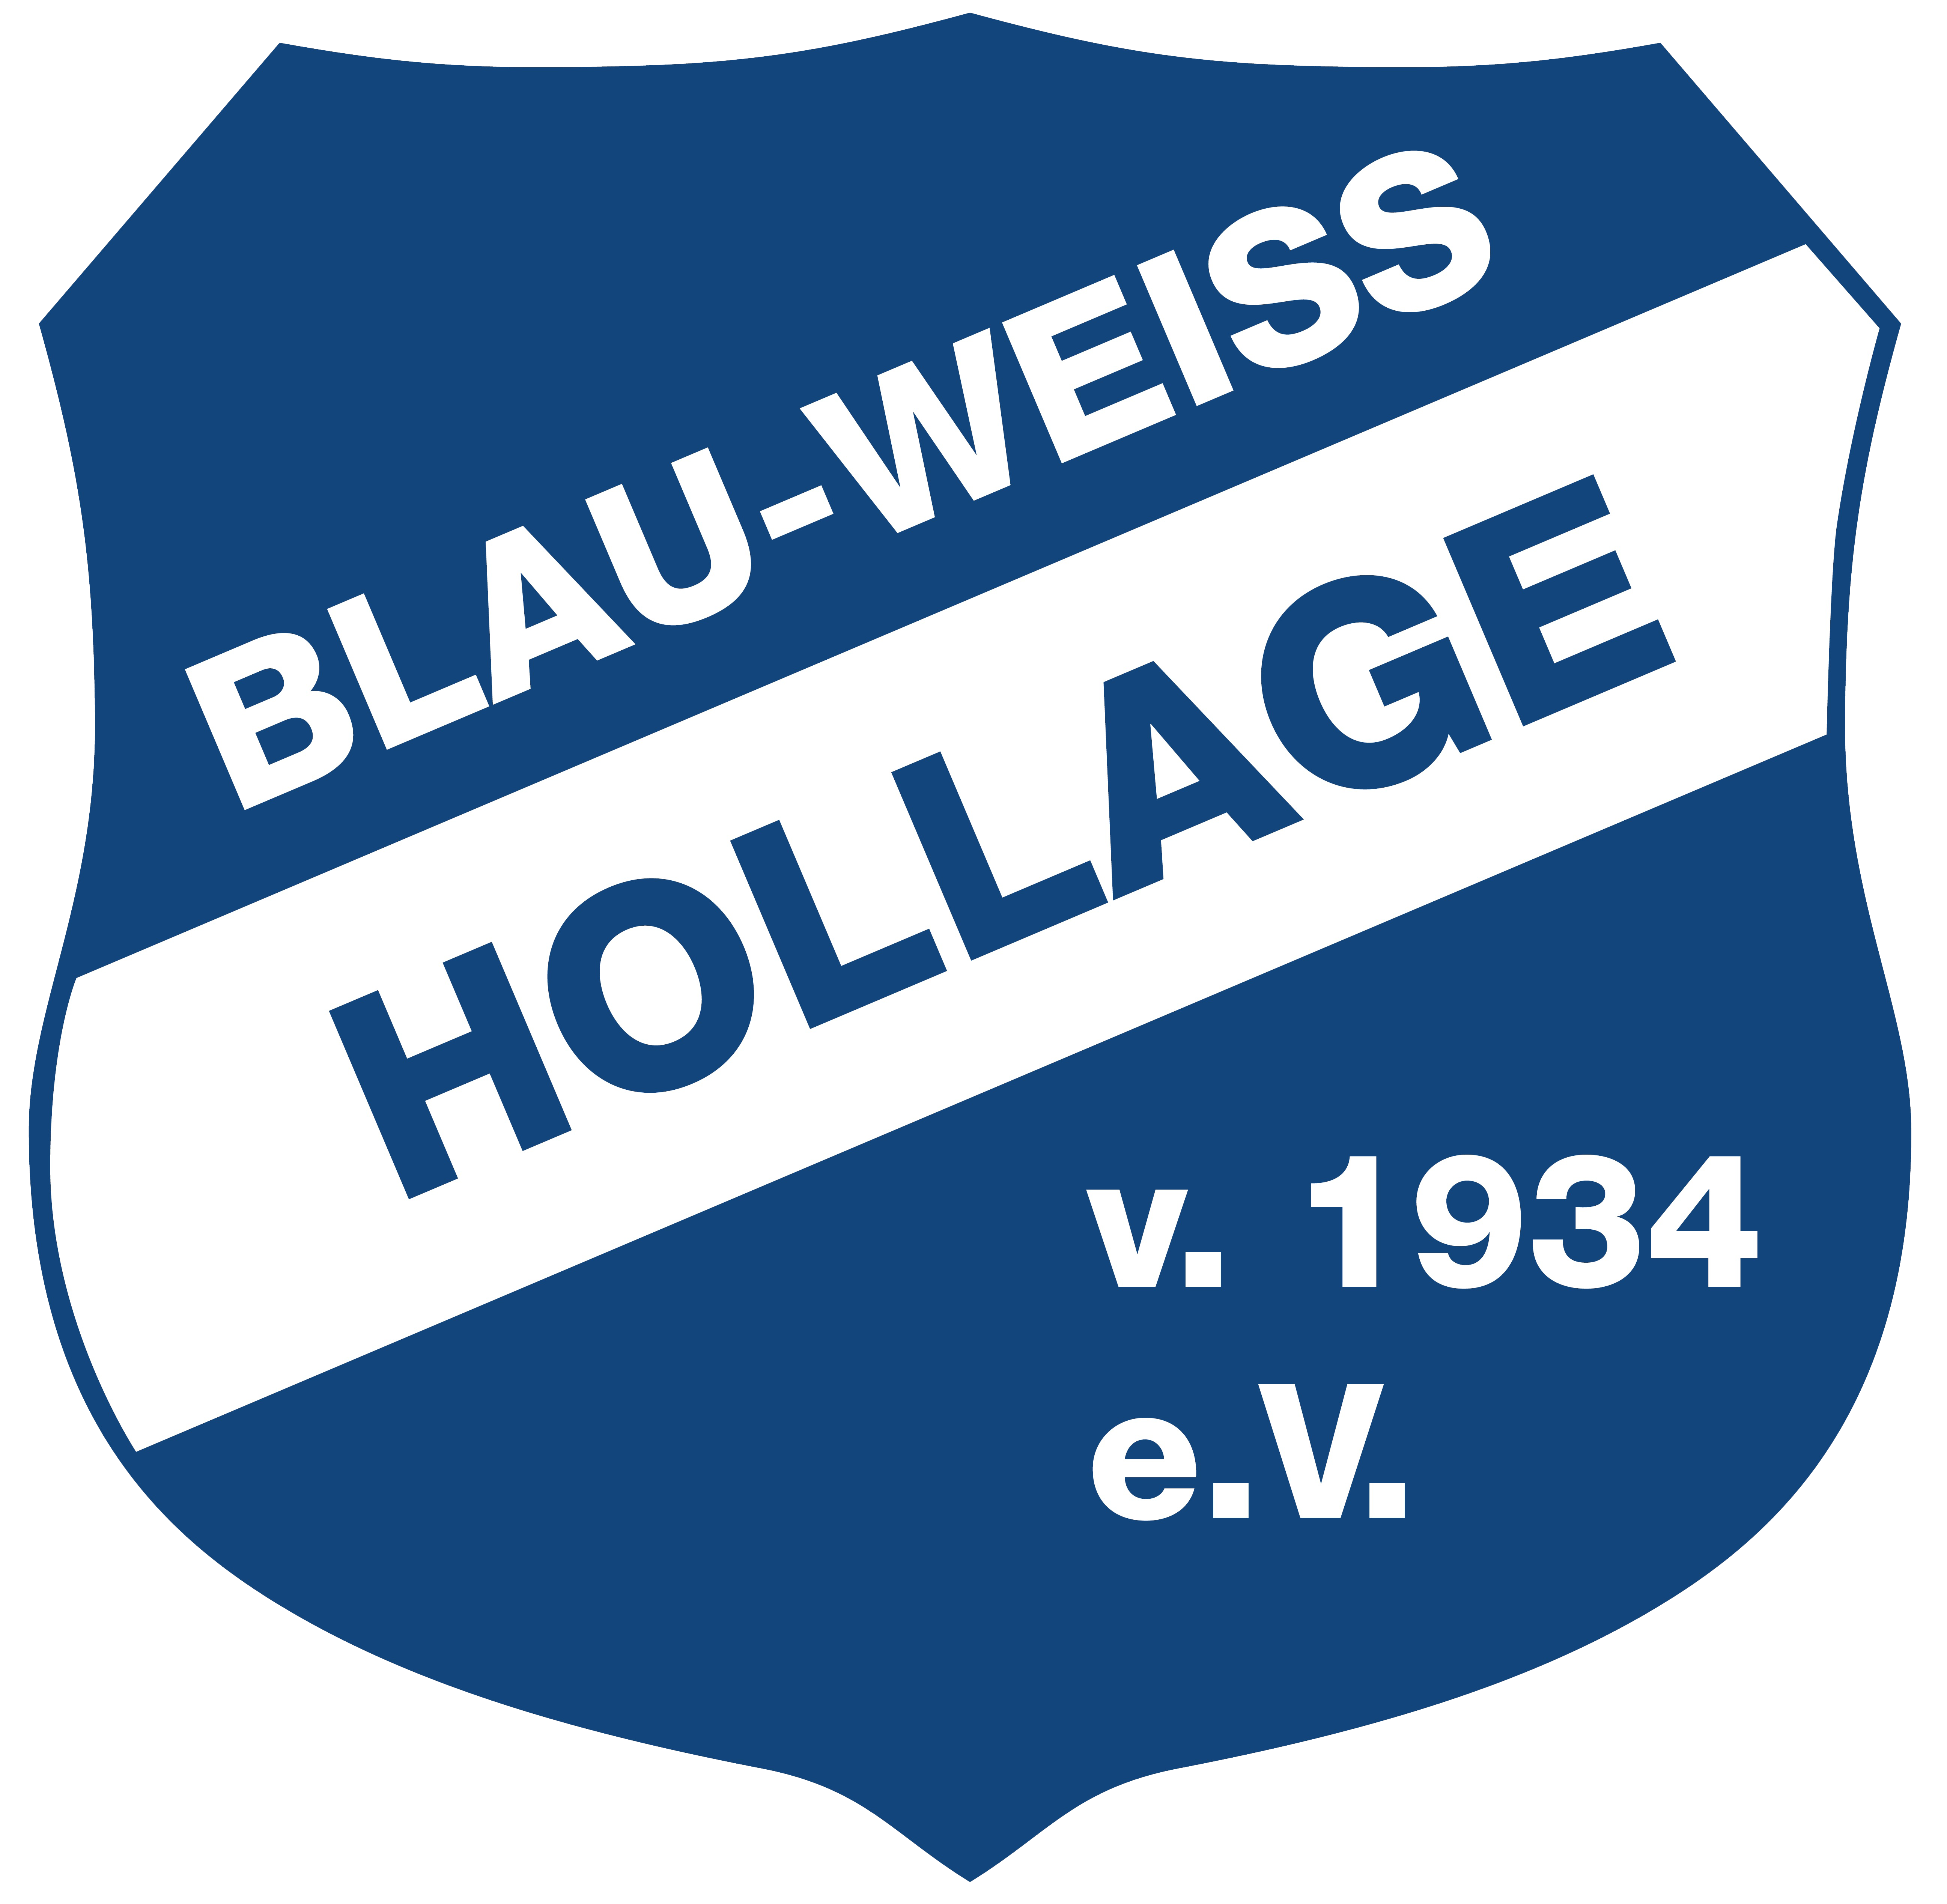 Blau-Weiss Hollage e. V. von 1934